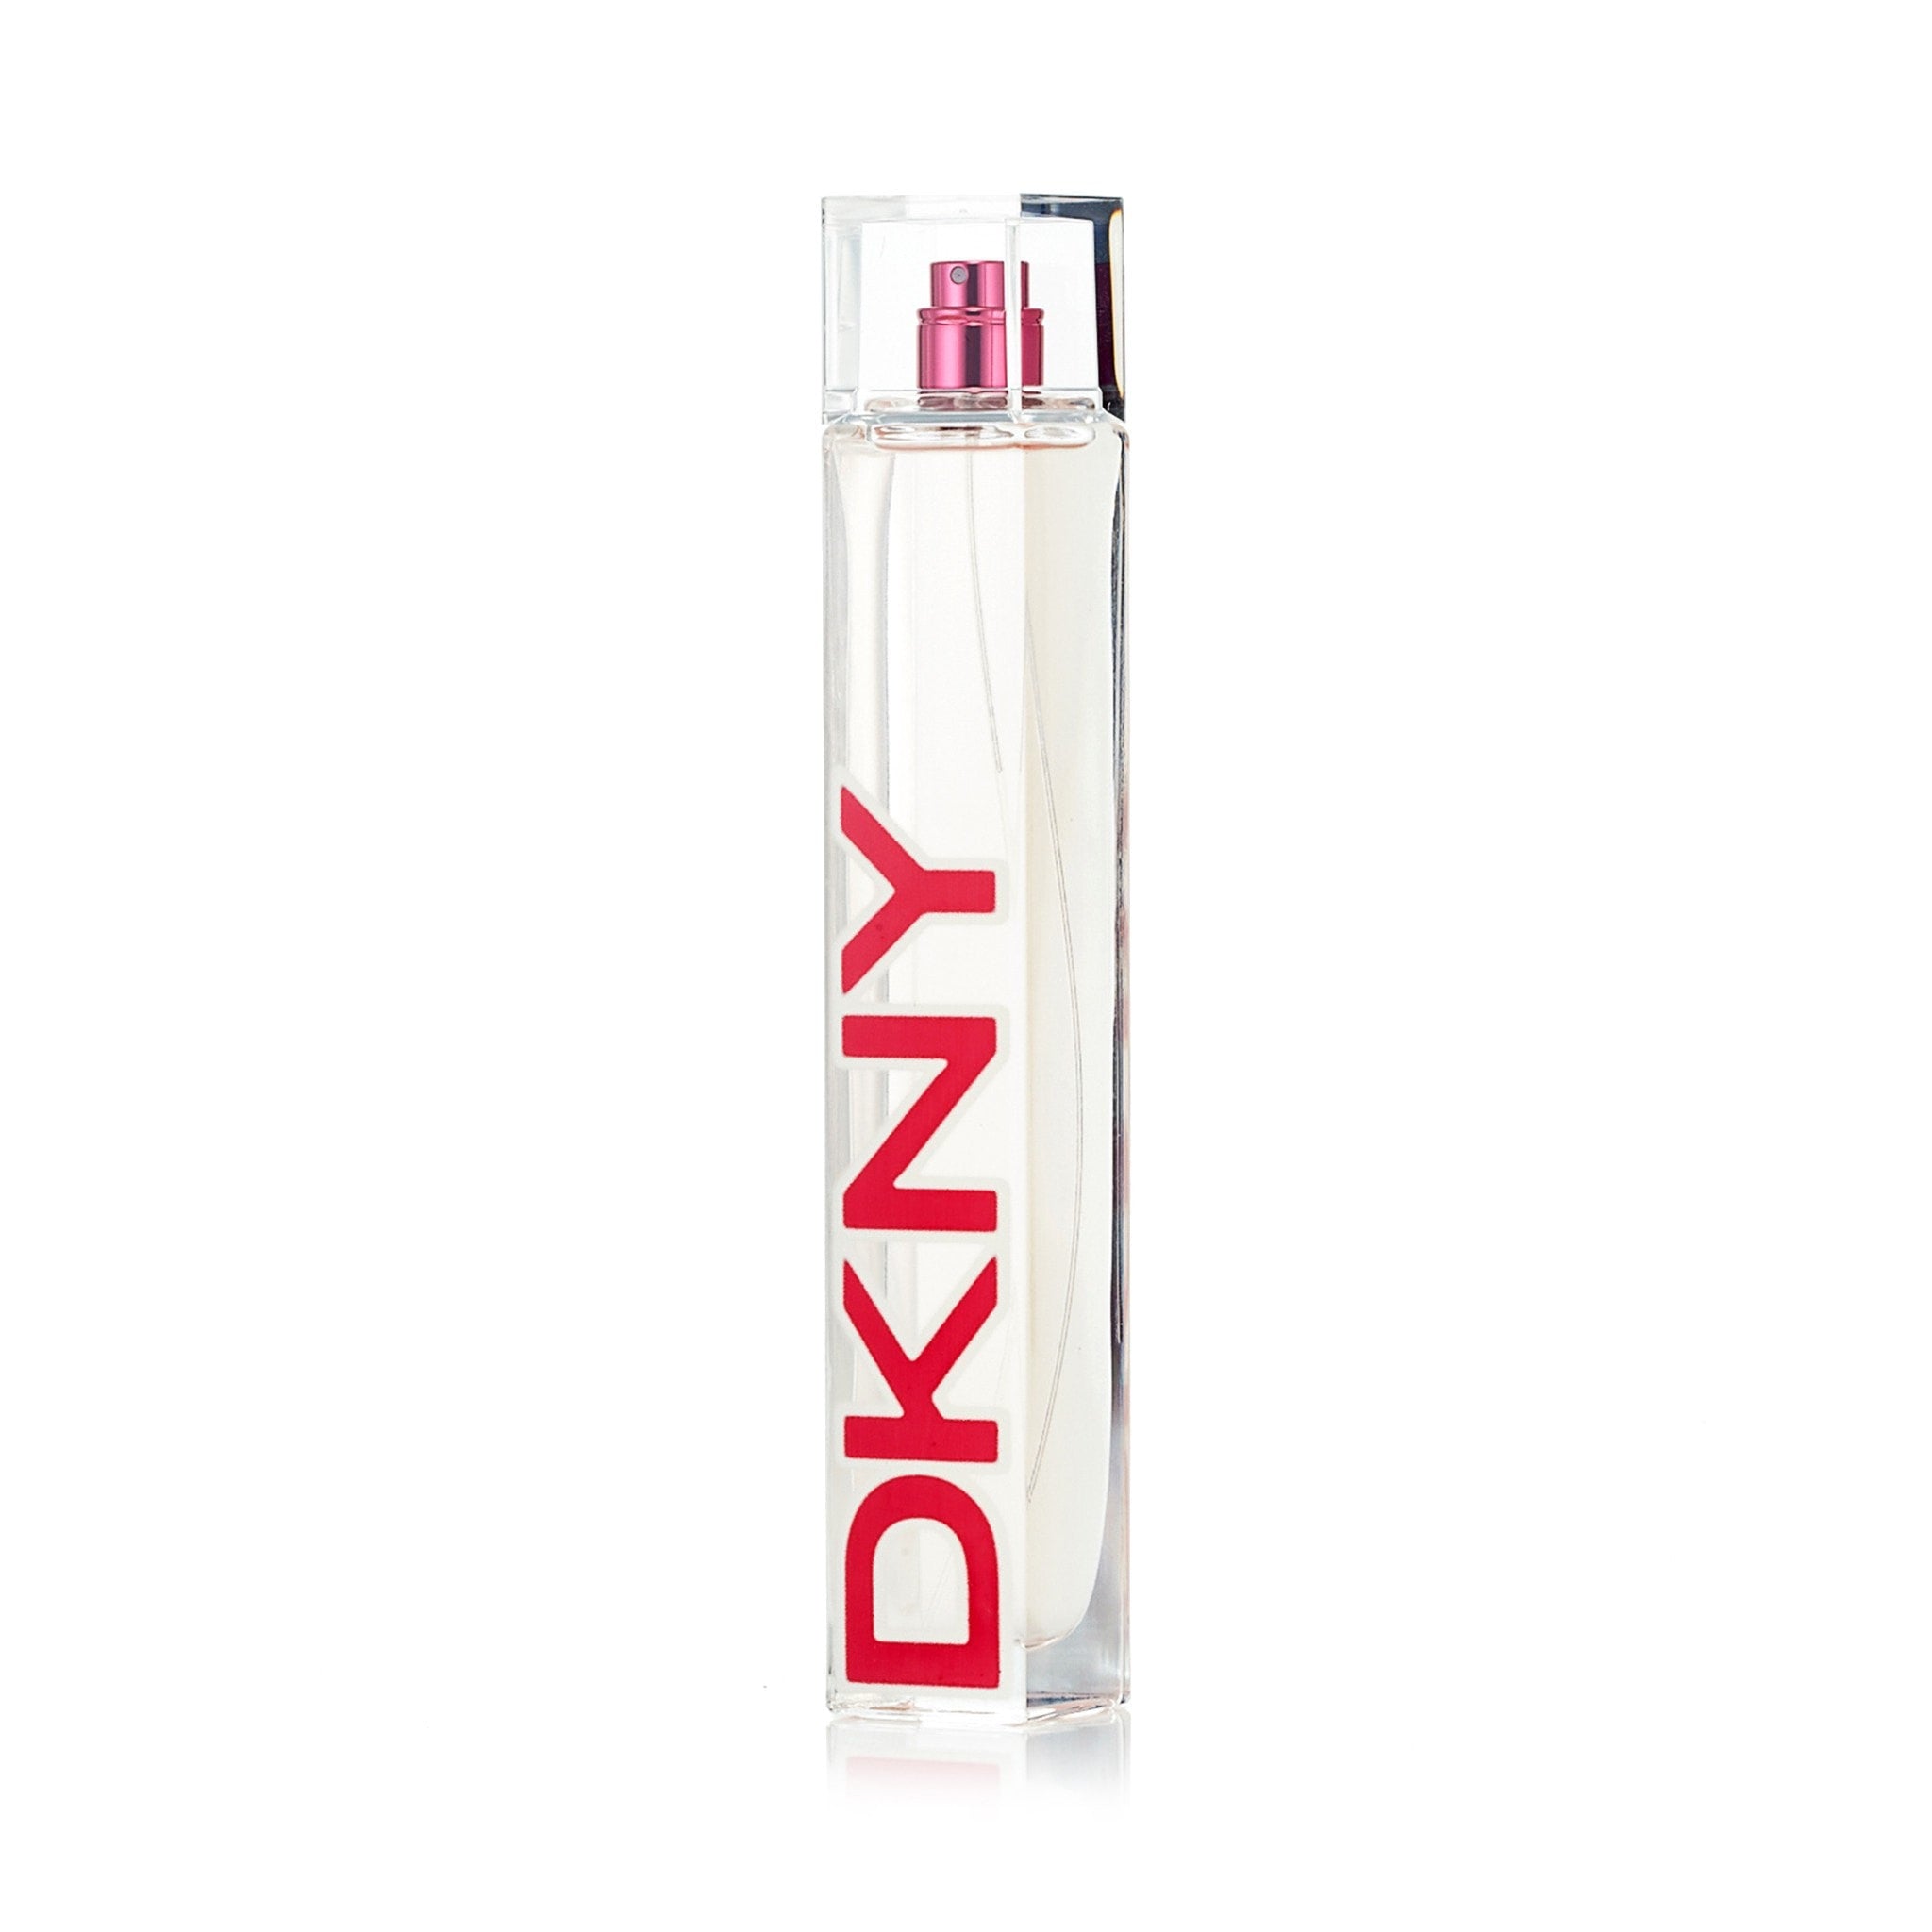 fond At sige sandheden hovedvej DKNY Women Limited Edition Eau de Toilette Spray for Women by Donna Ka –  Fragrance Market